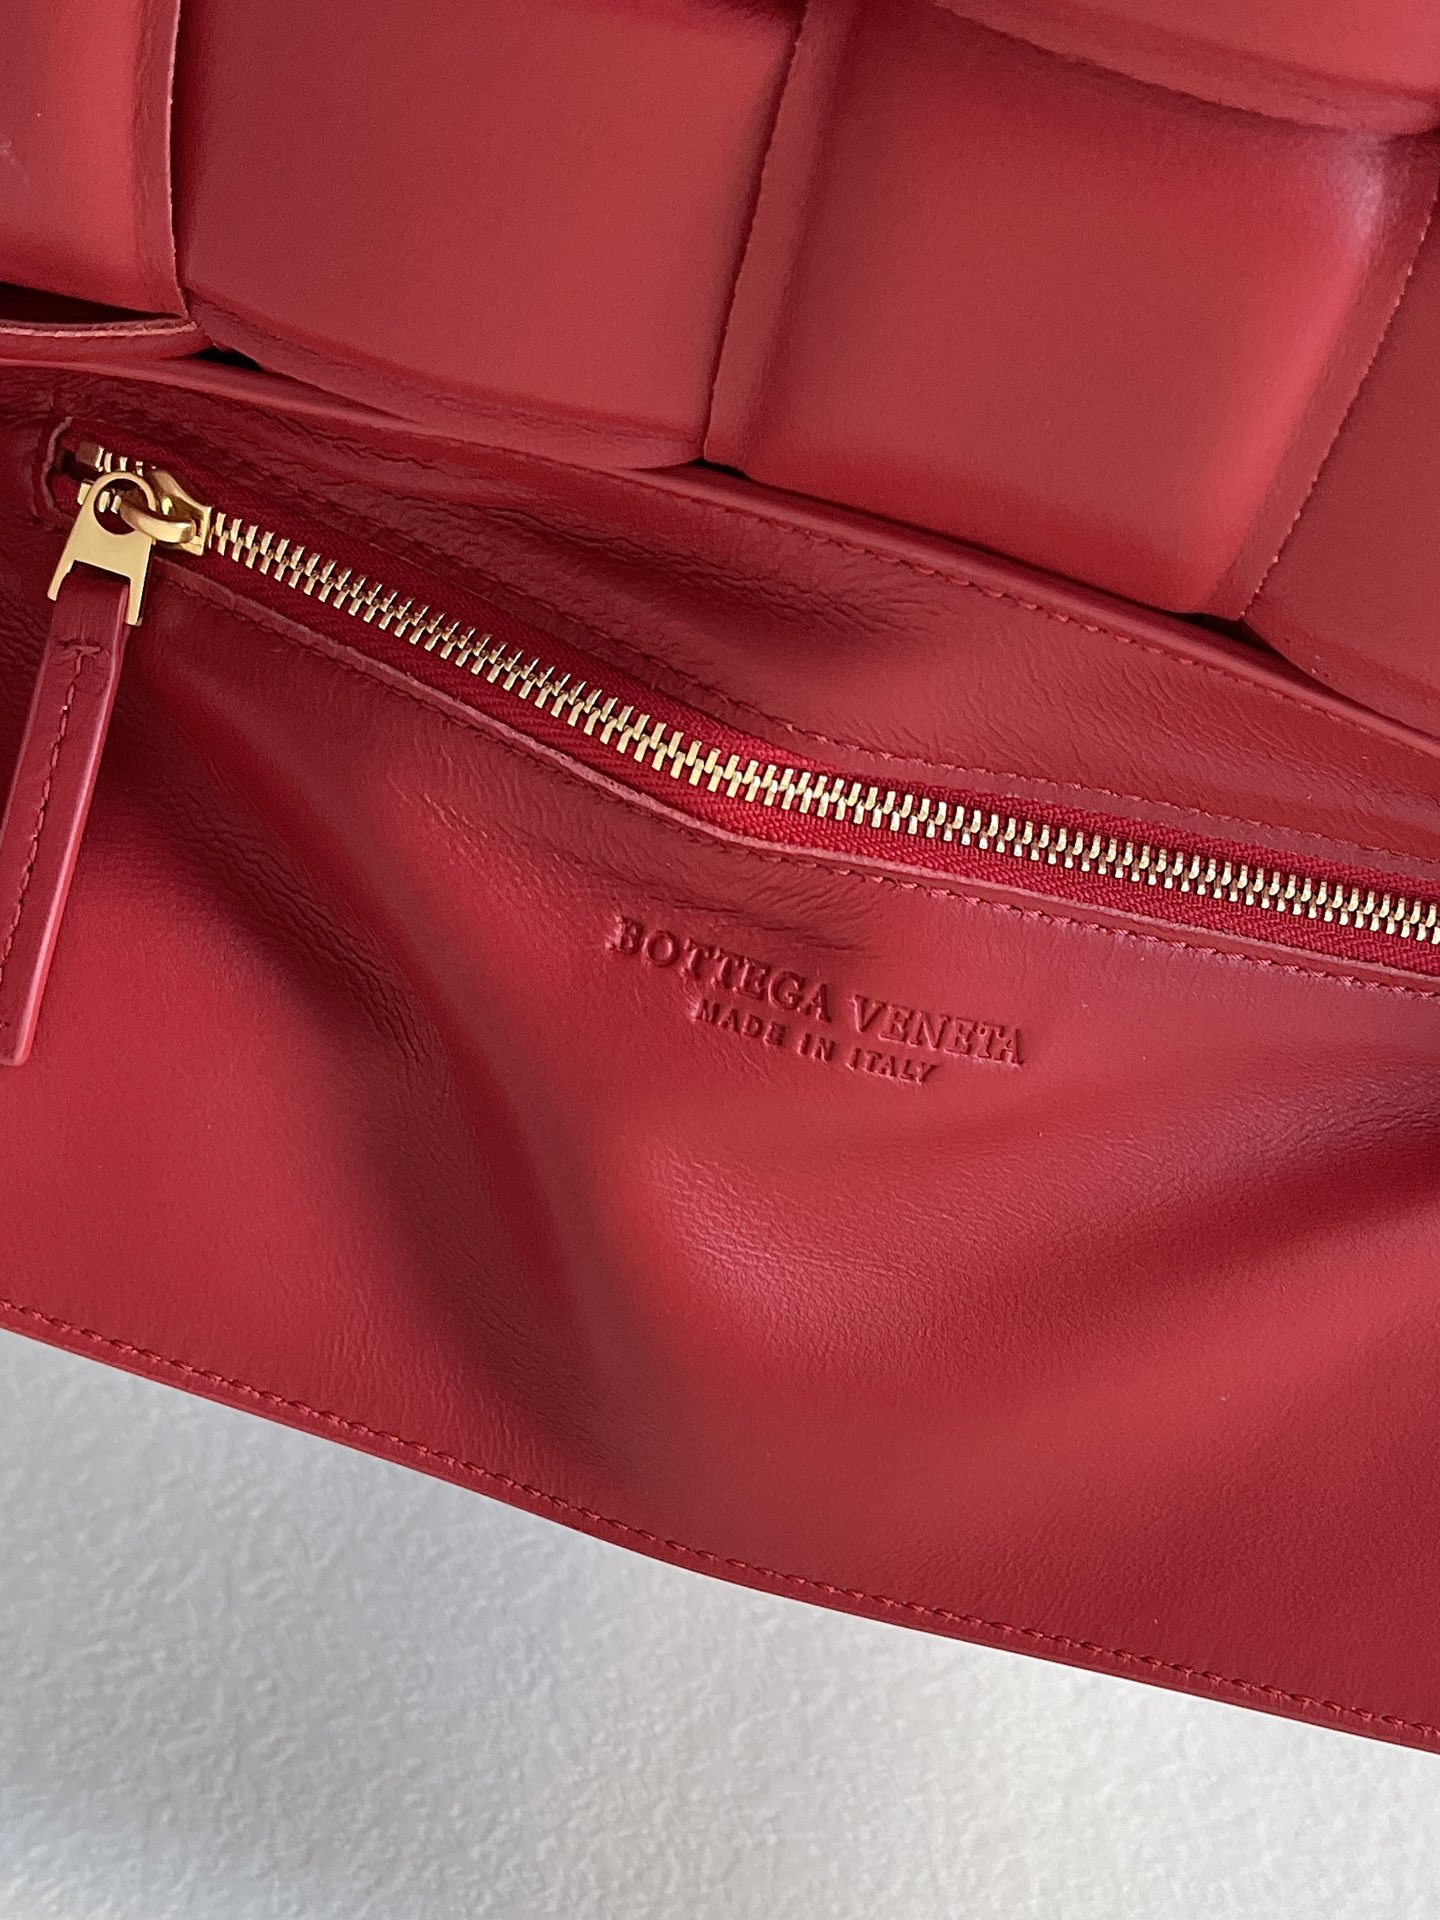 宝缇嘉官网新款 BV Cassette bag卡带包枕头包 油蜡皮覆盆子红 时髦洋气 金扣